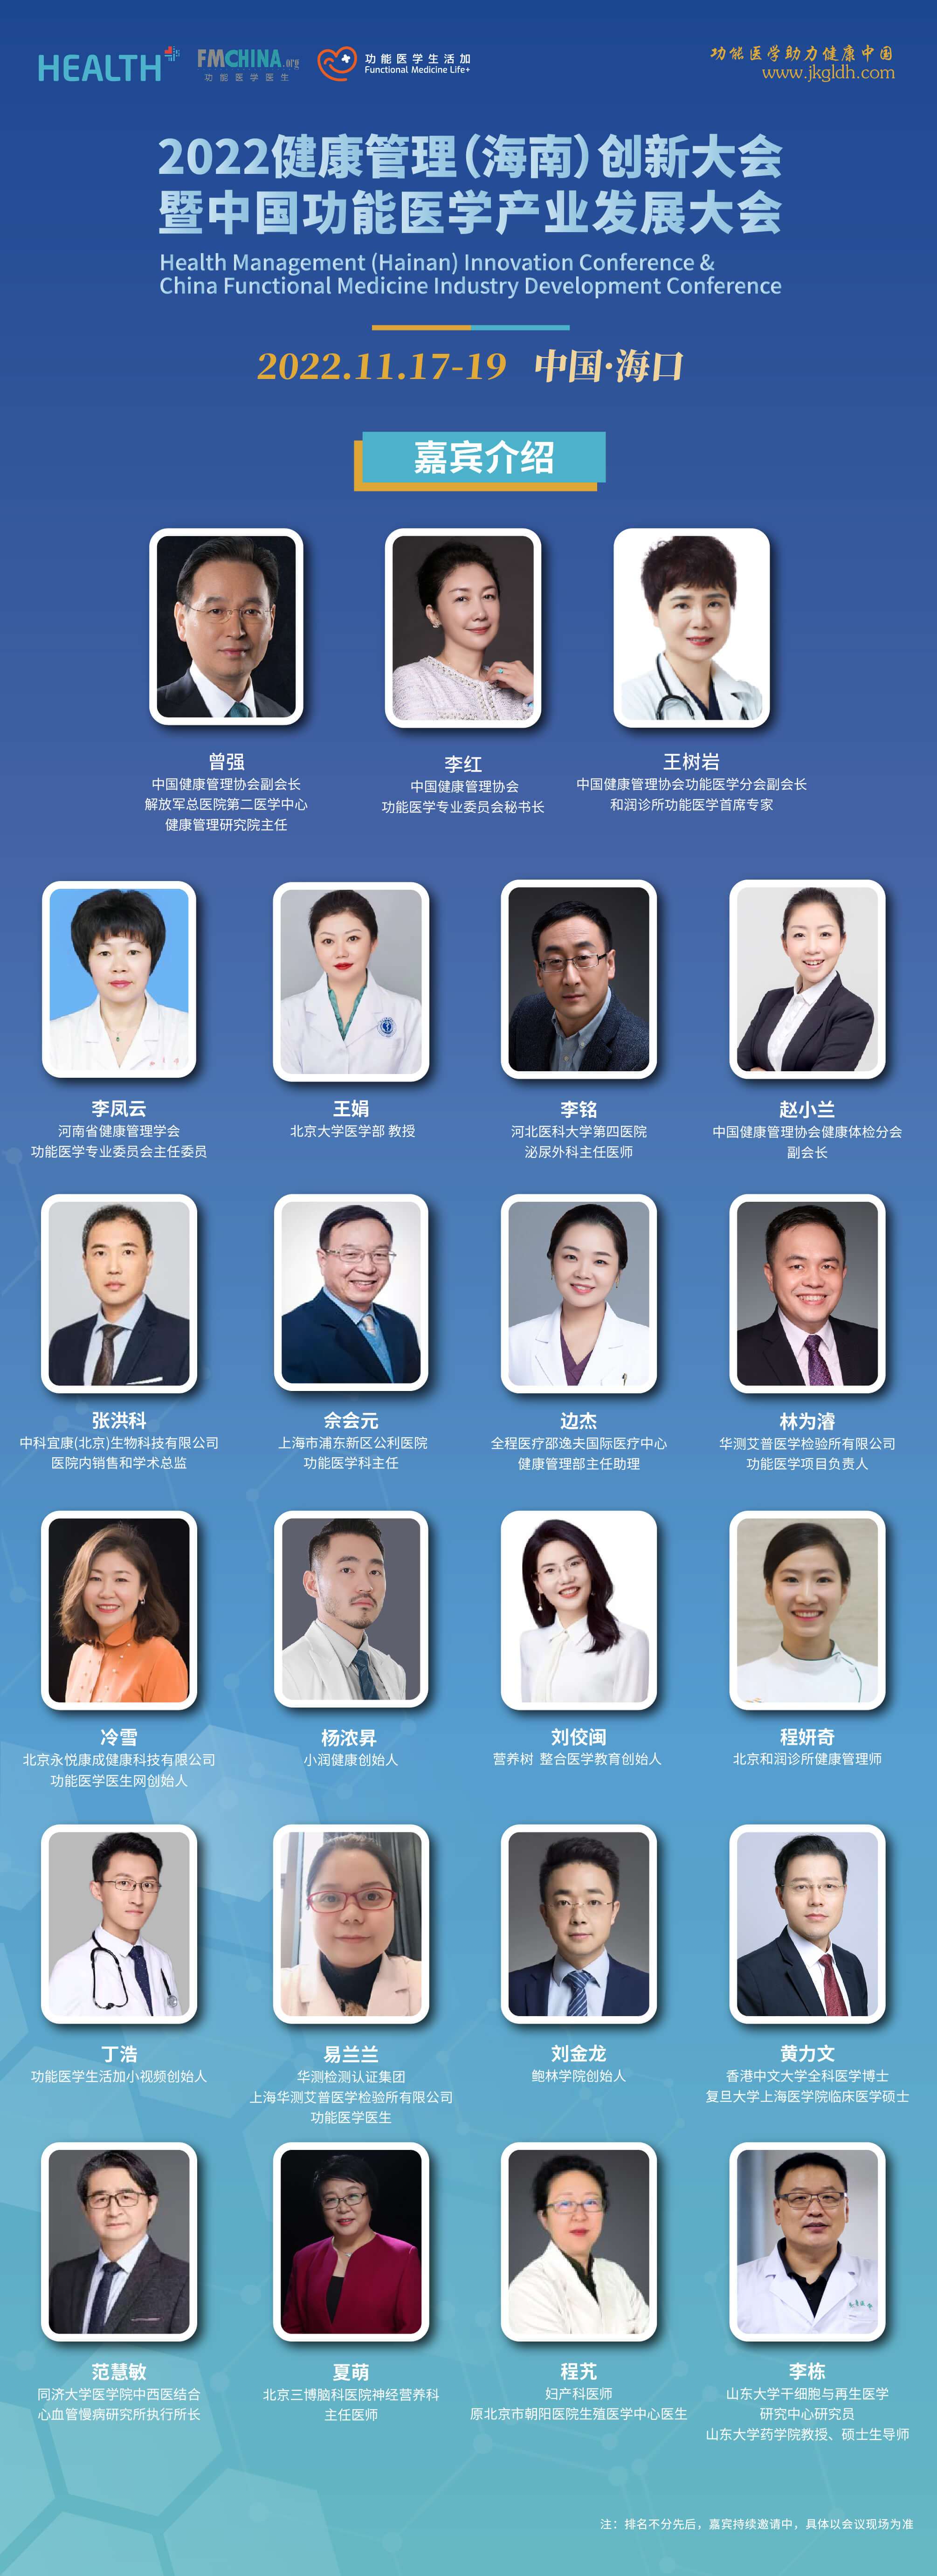 2022年健康管理（海南）創新大會暨中國功能醫學產業發展大會